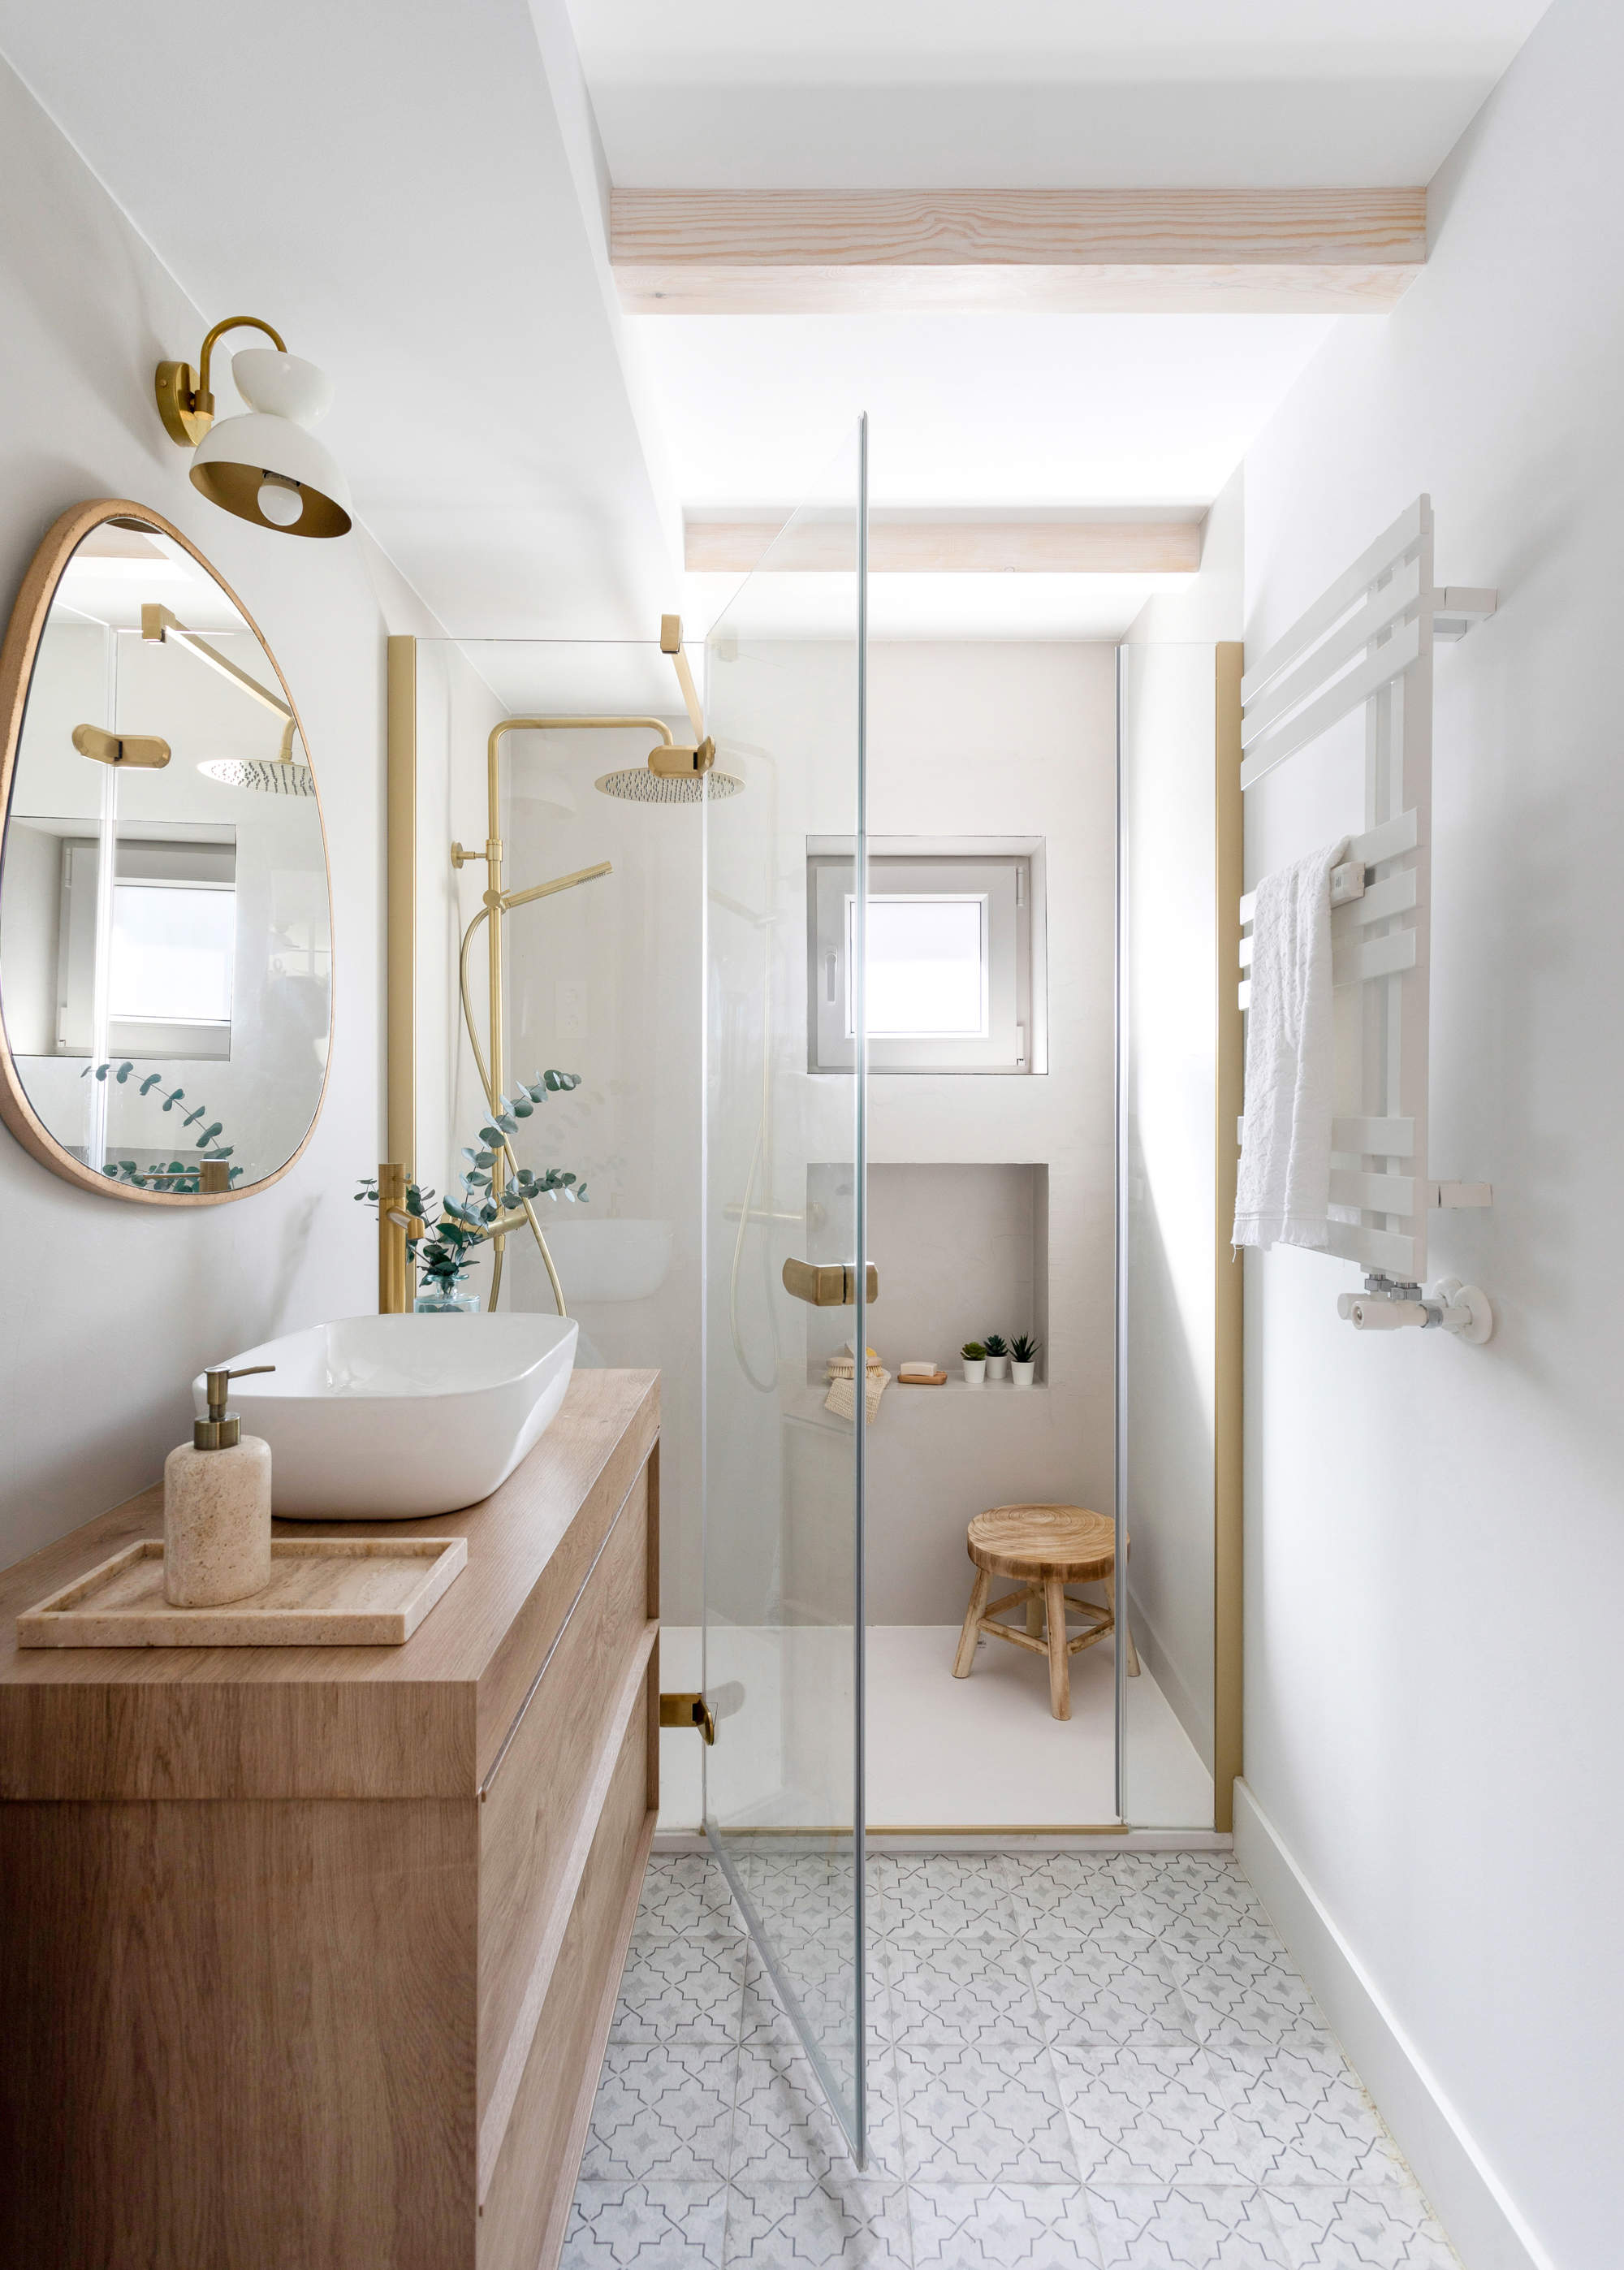 Baño con ducha con mampara y detalles en dorado.